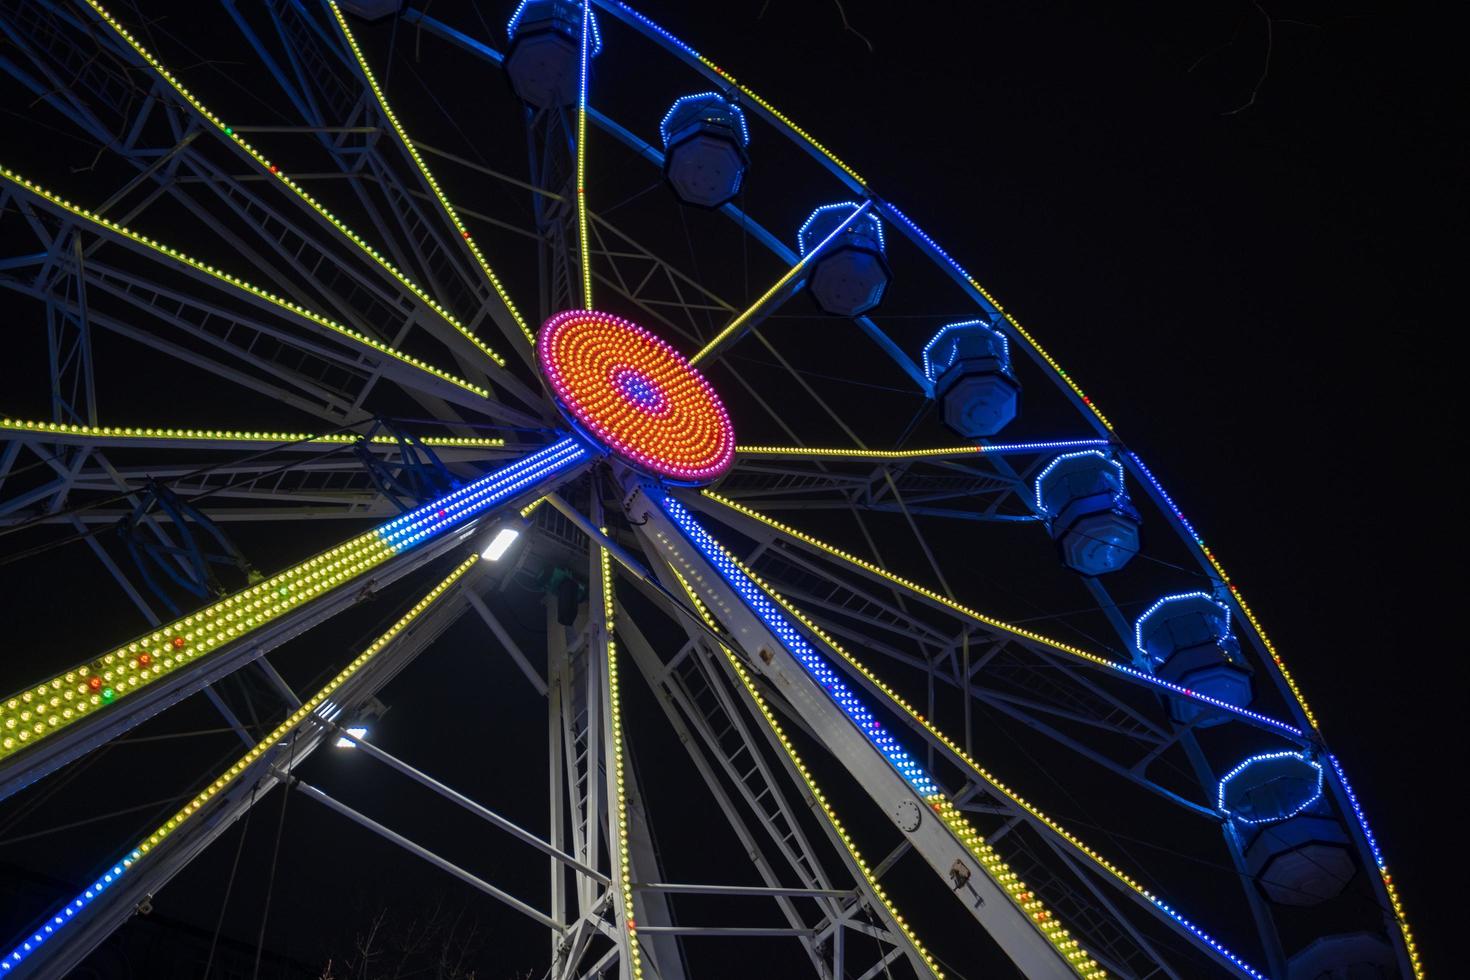 grande roue magnifiquement illuminée la nuit à leeds par la mairie de la ville. photo